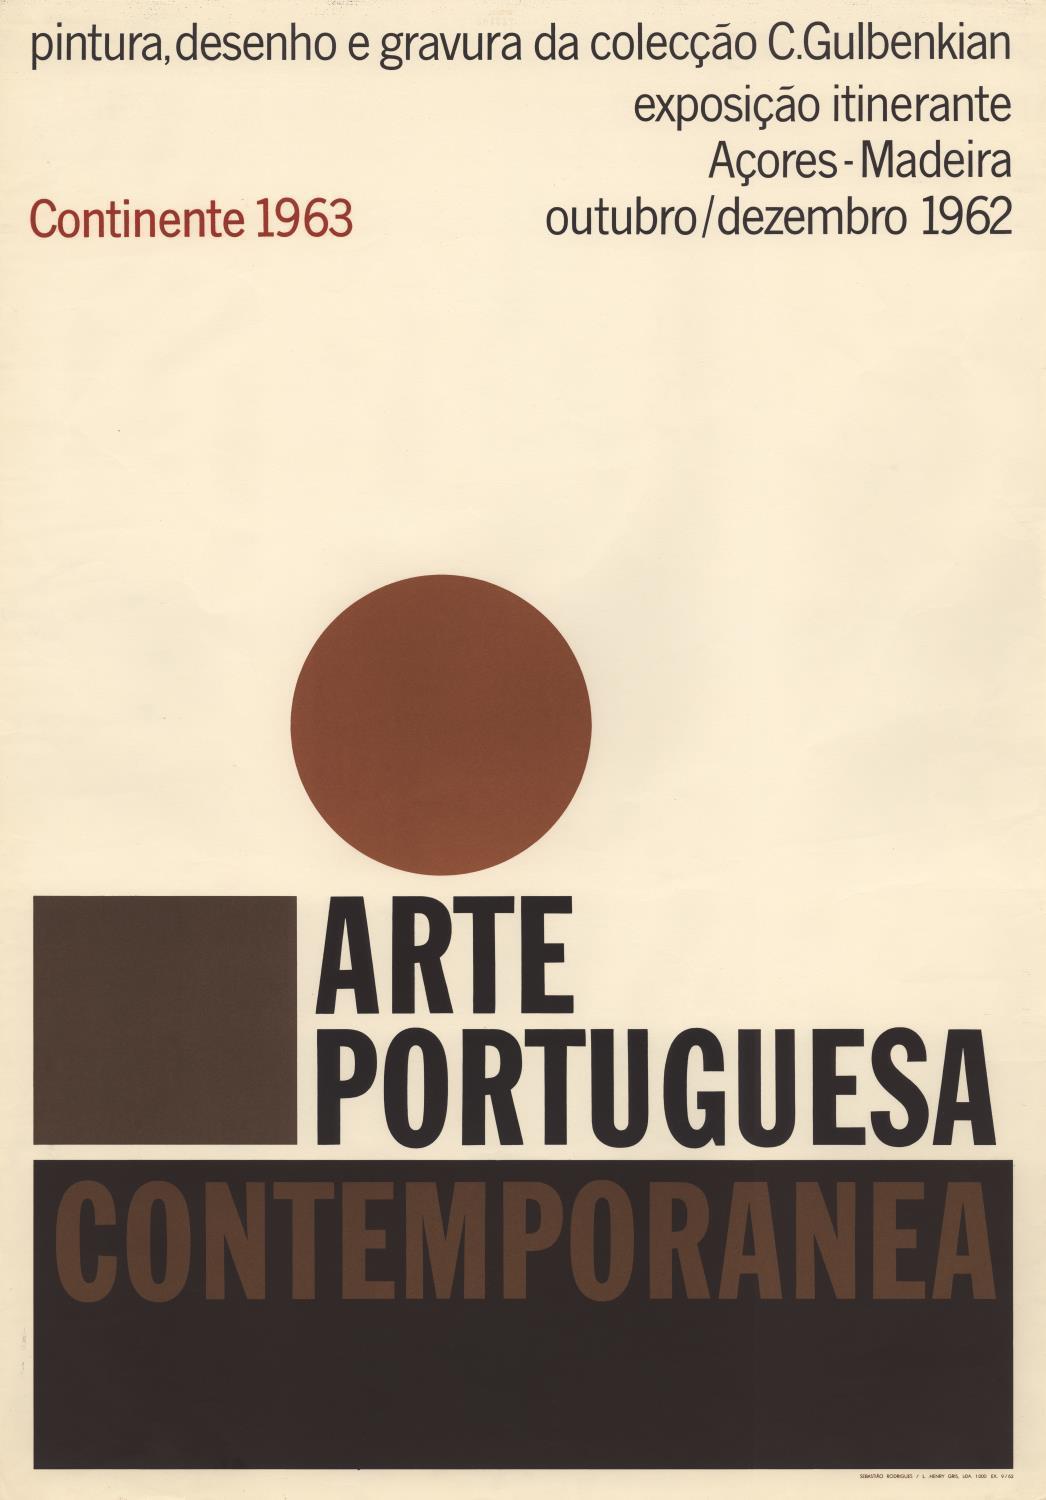 Arte Portuguesa Contemporânea. Pintura, Desenho e Gravura da Colecção C. Gulbenkian